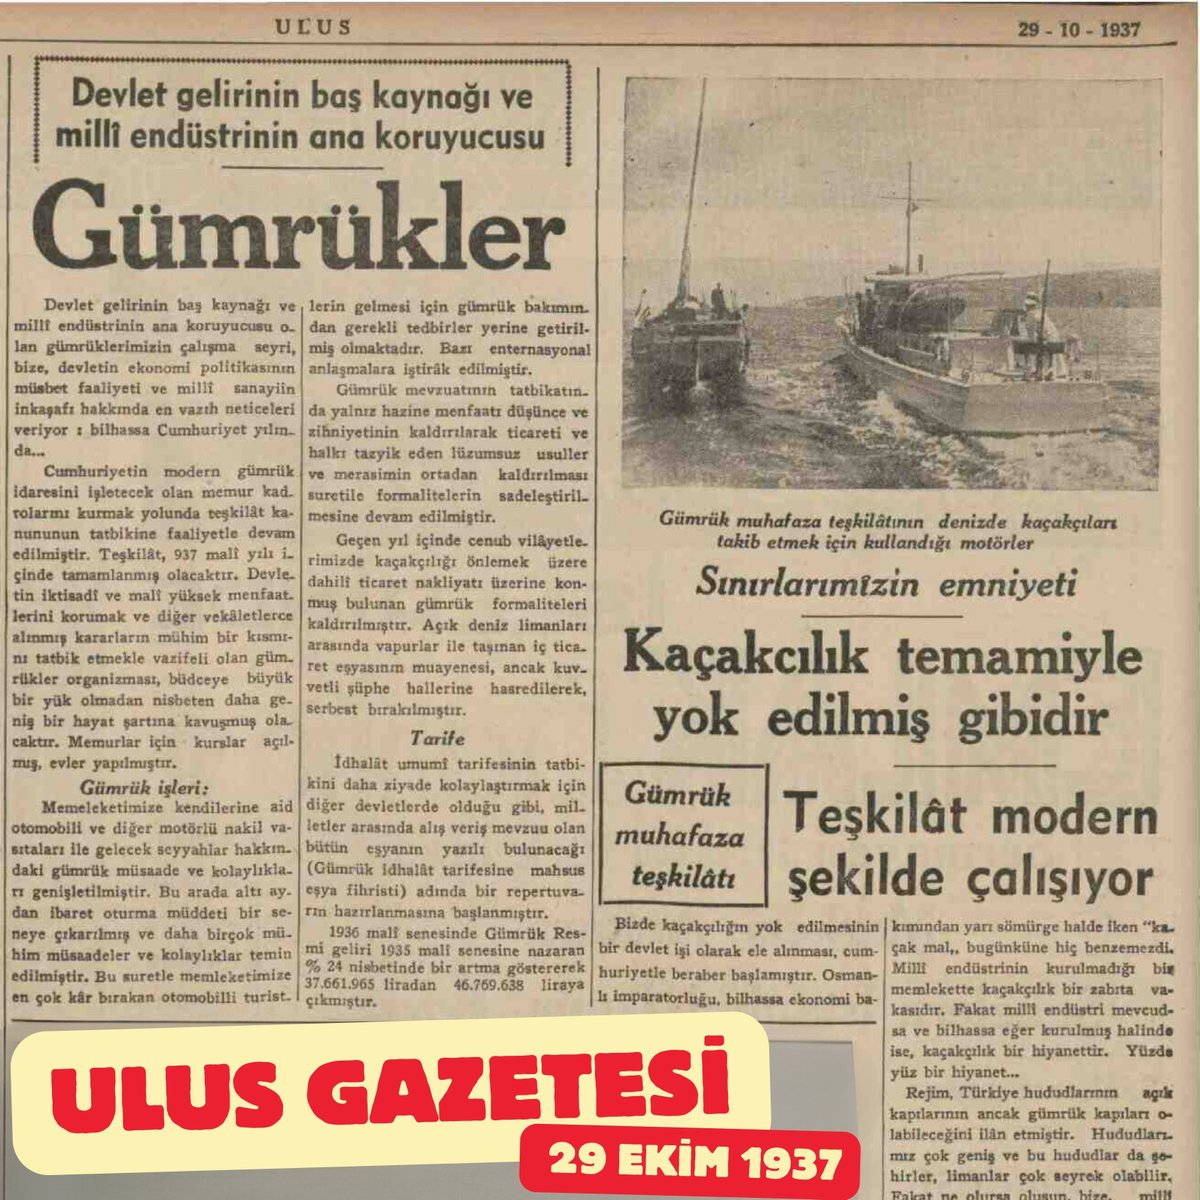 29 Ekim 1937 Tarihli Ulus Gazetesi

#Tbt #gümrüklermuhafaza #geçityok #alo136 #gümrükmuhafazanöbette #kaçakçılıklamücadele #tbt